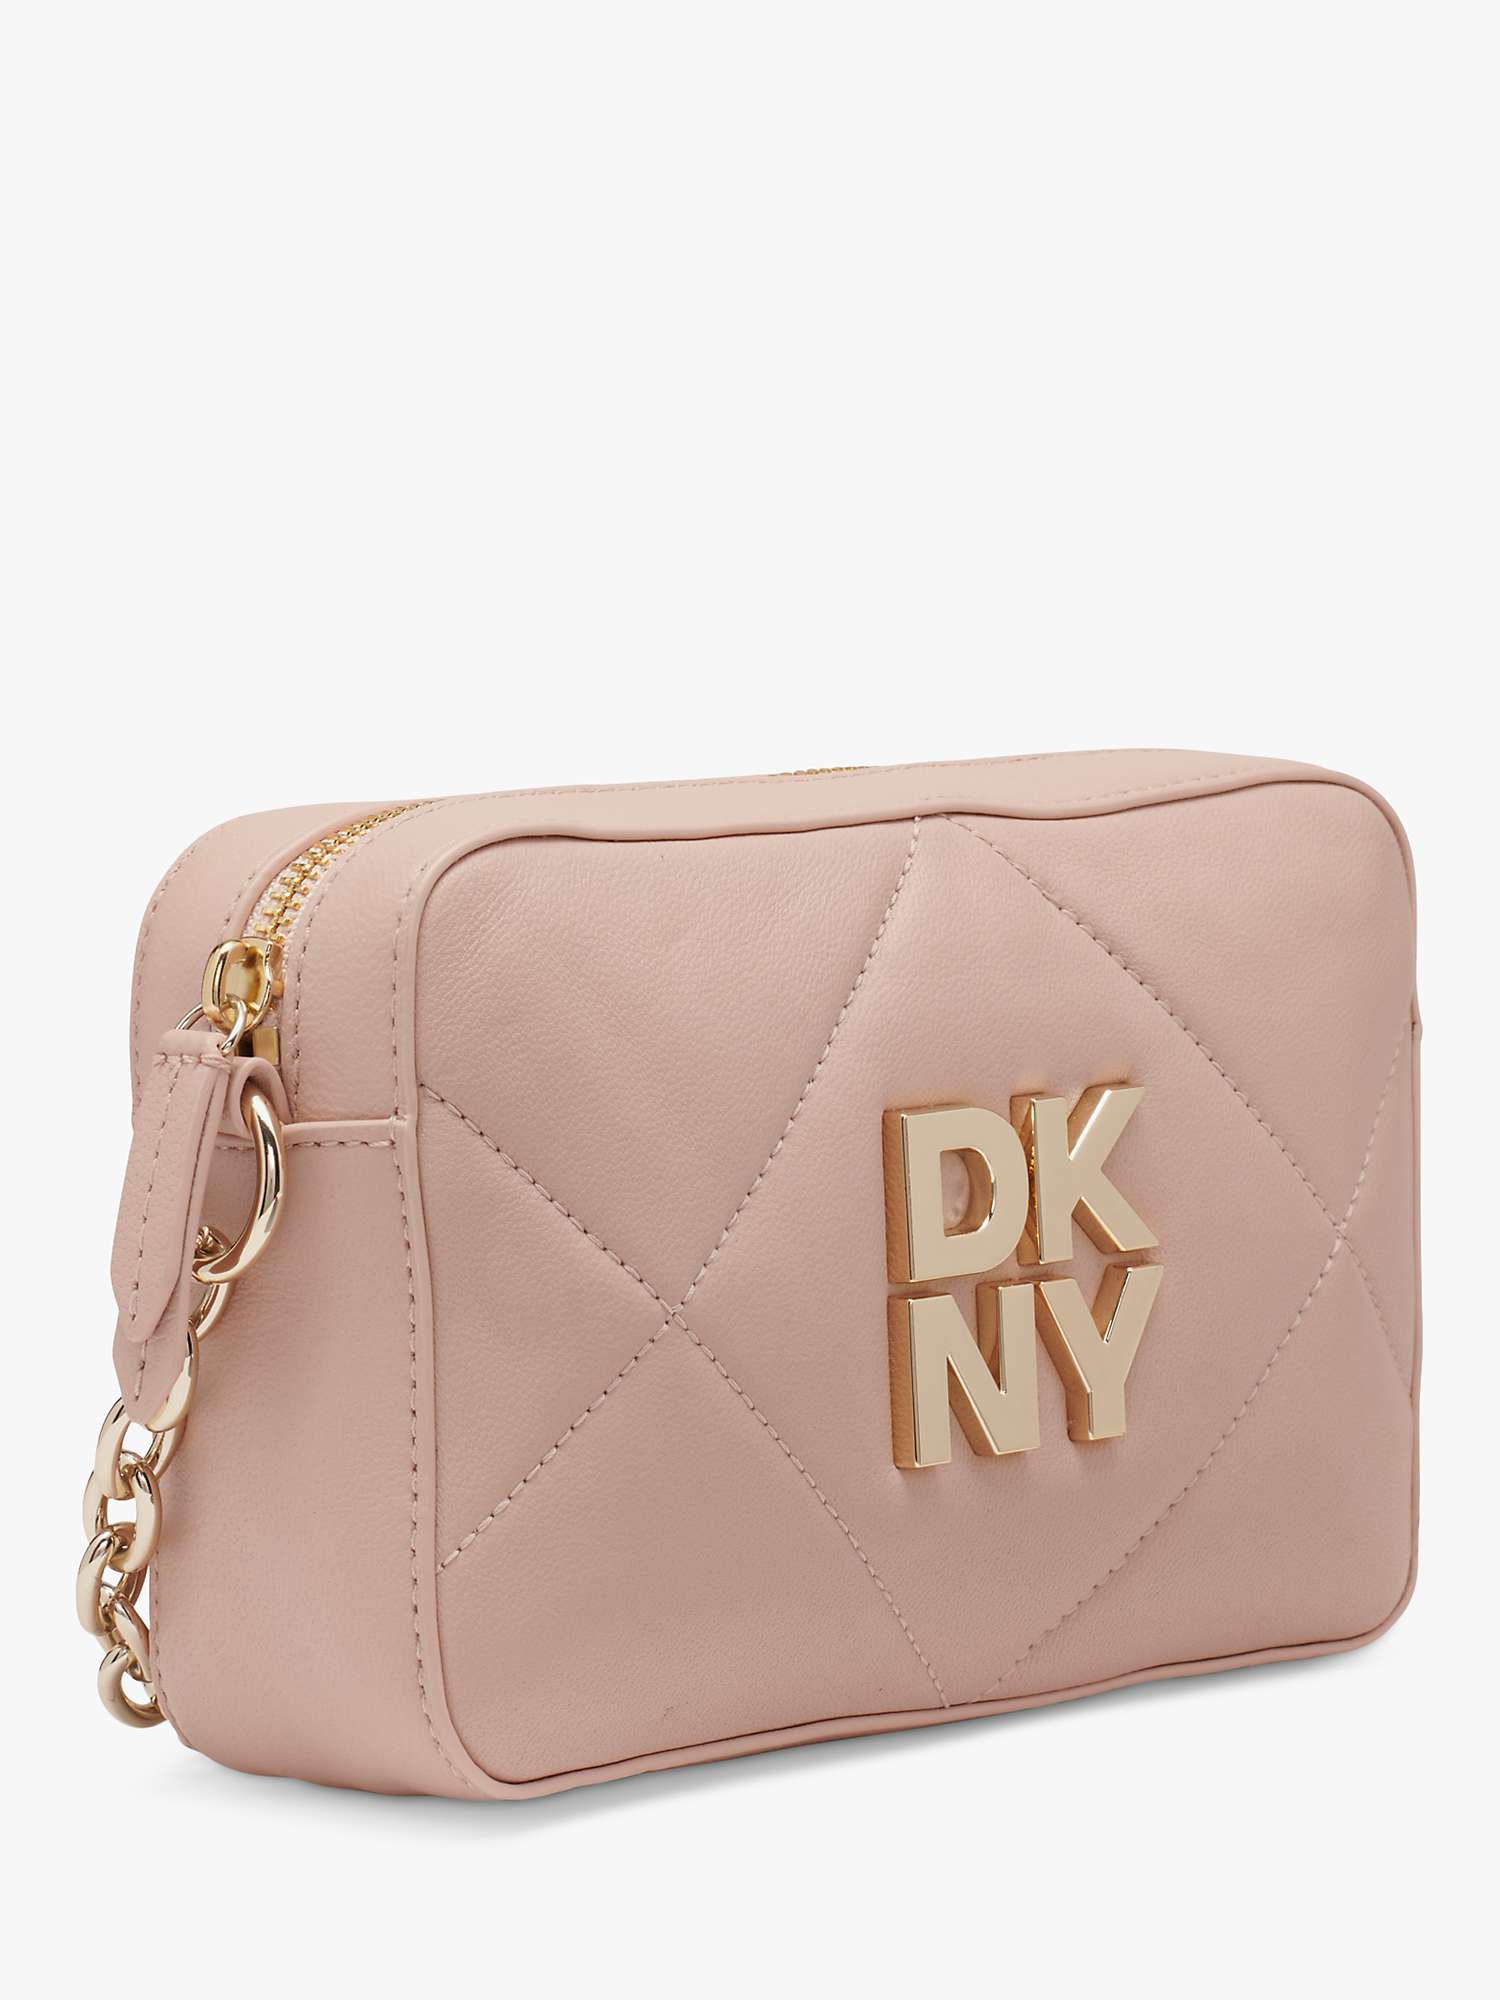 Buy DKNY Red Hook Camera Bag Online at johnlewis.com